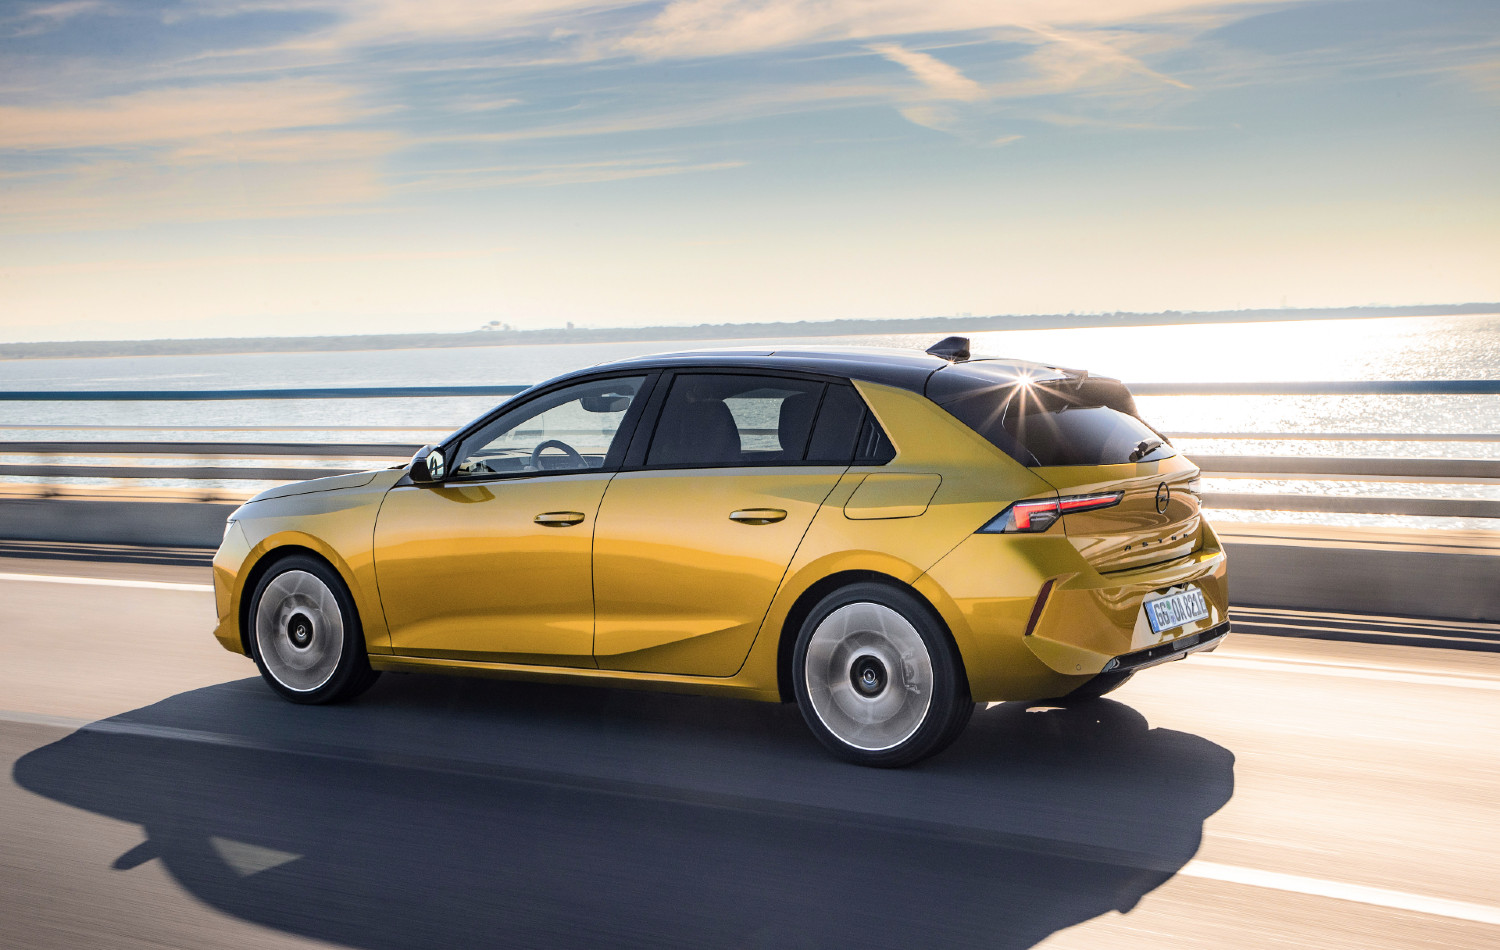 Proposto, tanto com motores a gasolina, como Diesel, o novo Opel estreia, igualmente, uma motorização PHEV